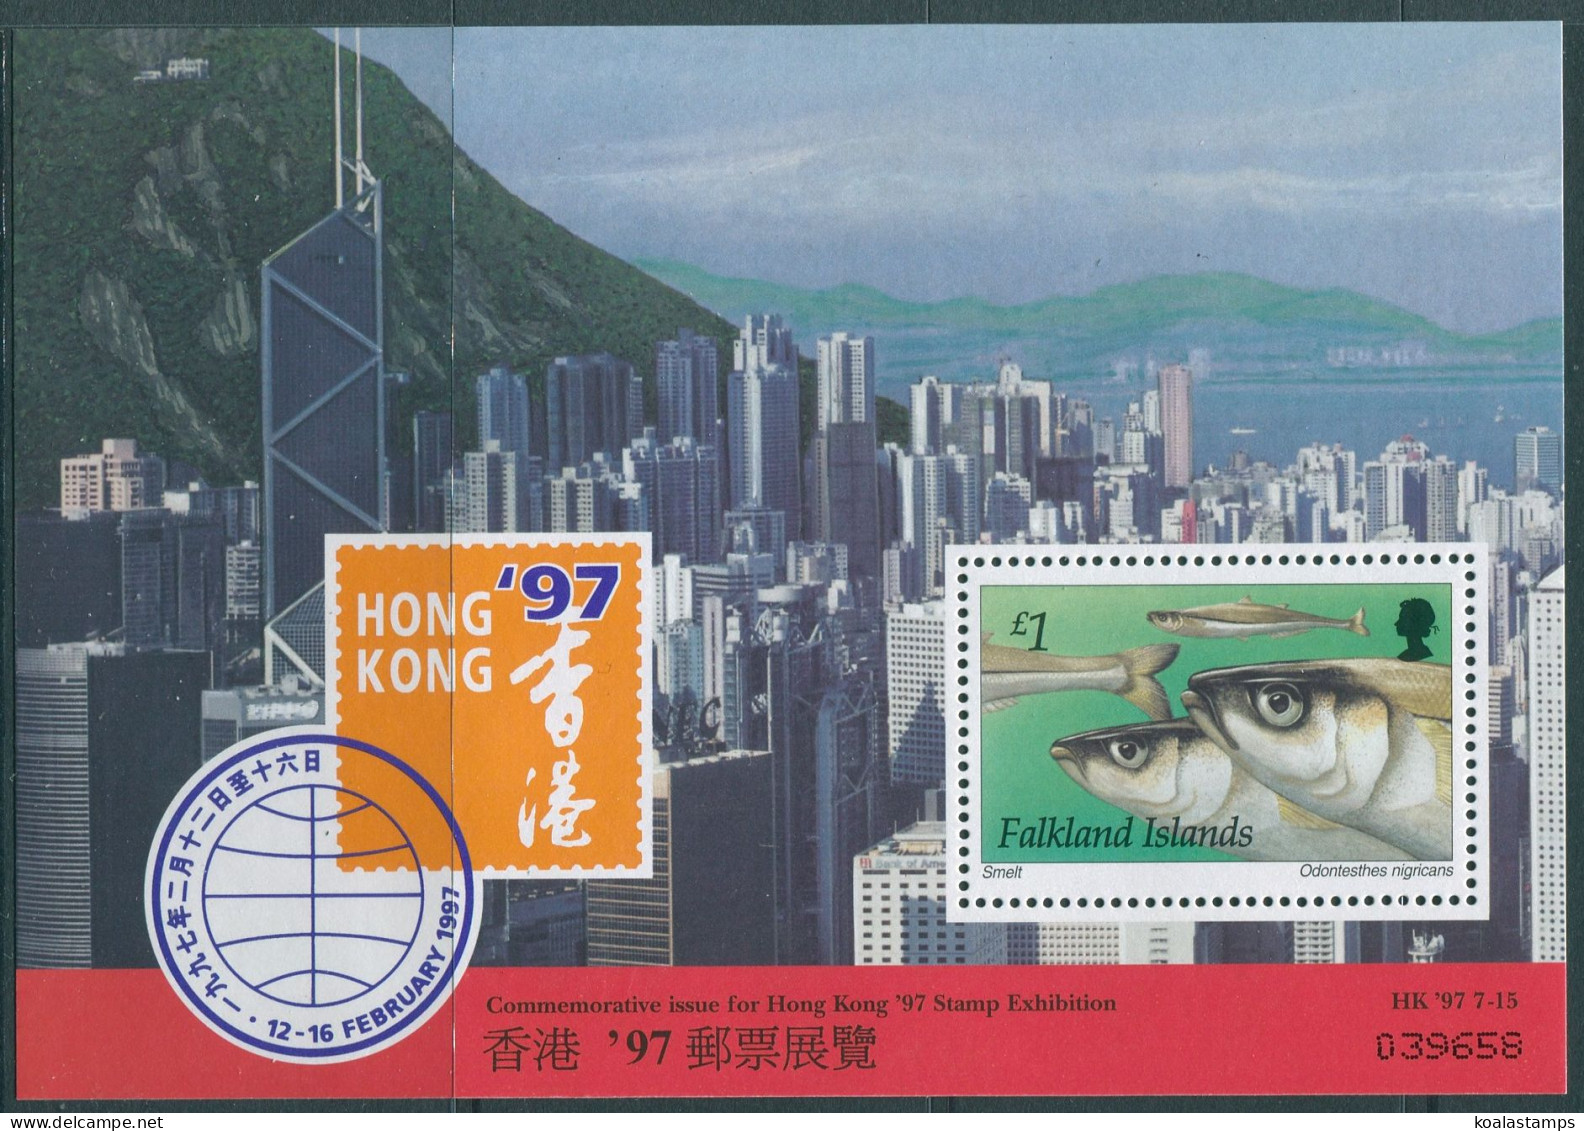 Falkland Islands 1997 SG779 Hong Kong Stamp Exhibition Smelt MS MNH - Falkland Islands